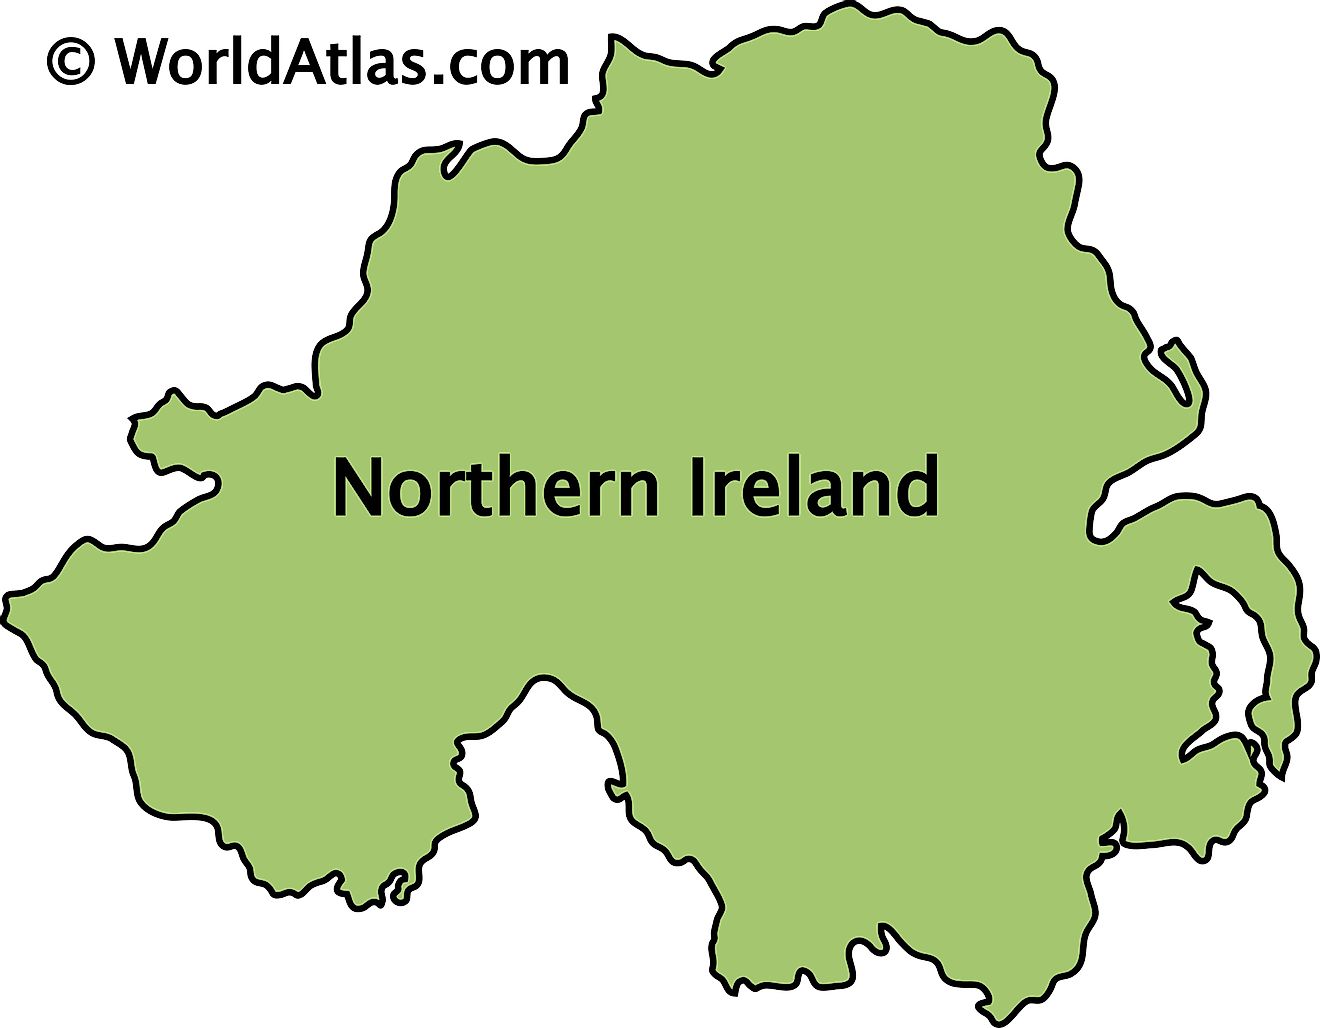 Mapa de contorno de Irlanda del Norte